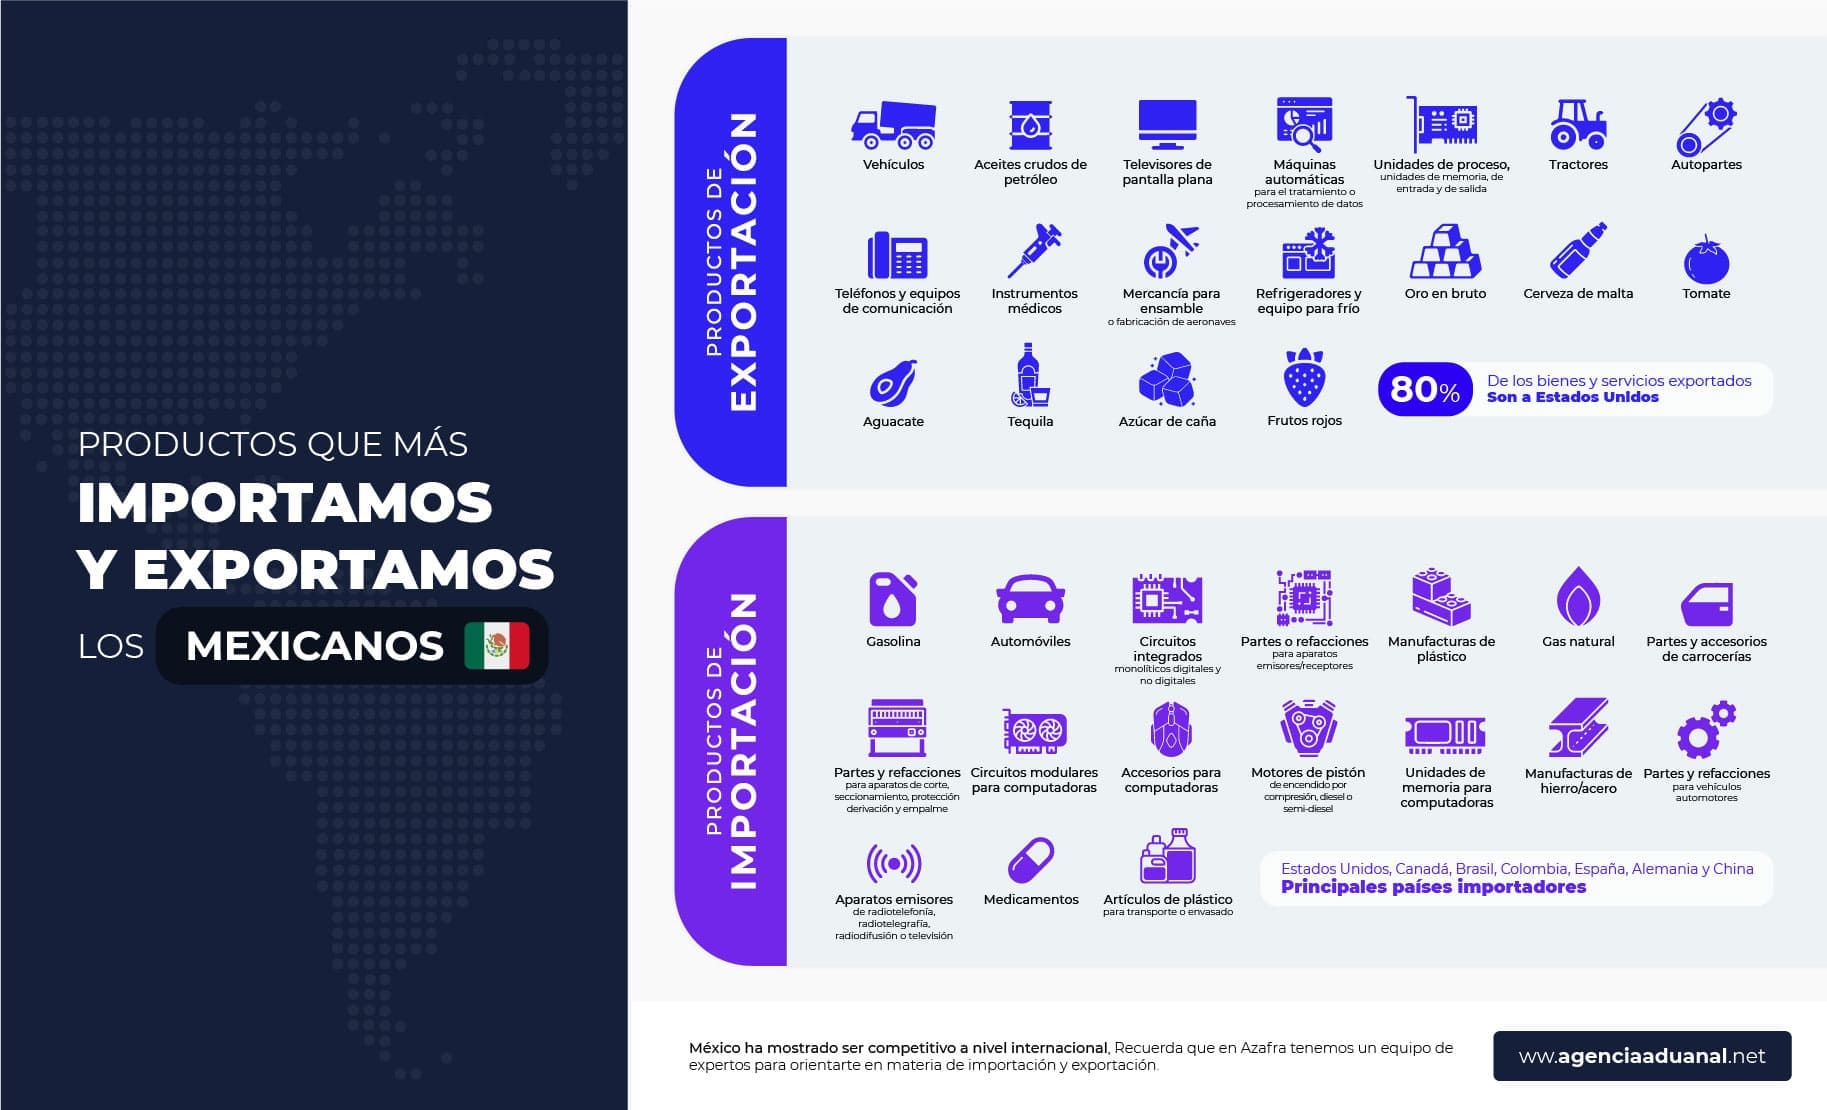 Productos que más importa y exporta México